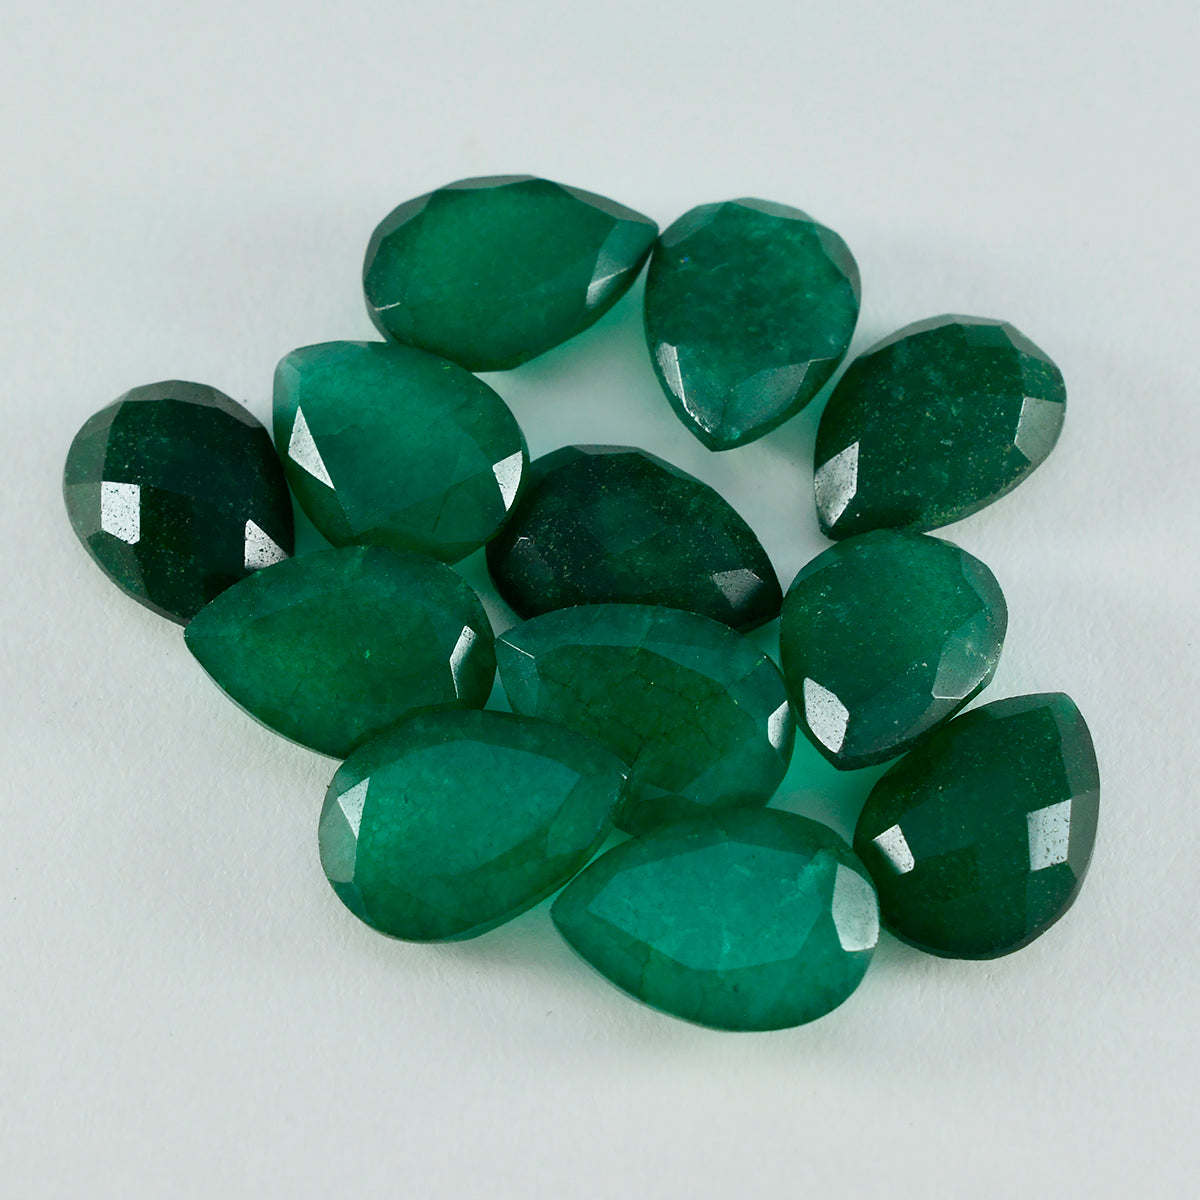 Riyogems 1 pieza jaspe verde auténtico facetado 9x13 mm forma de pera gemas sueltas de calidad A+